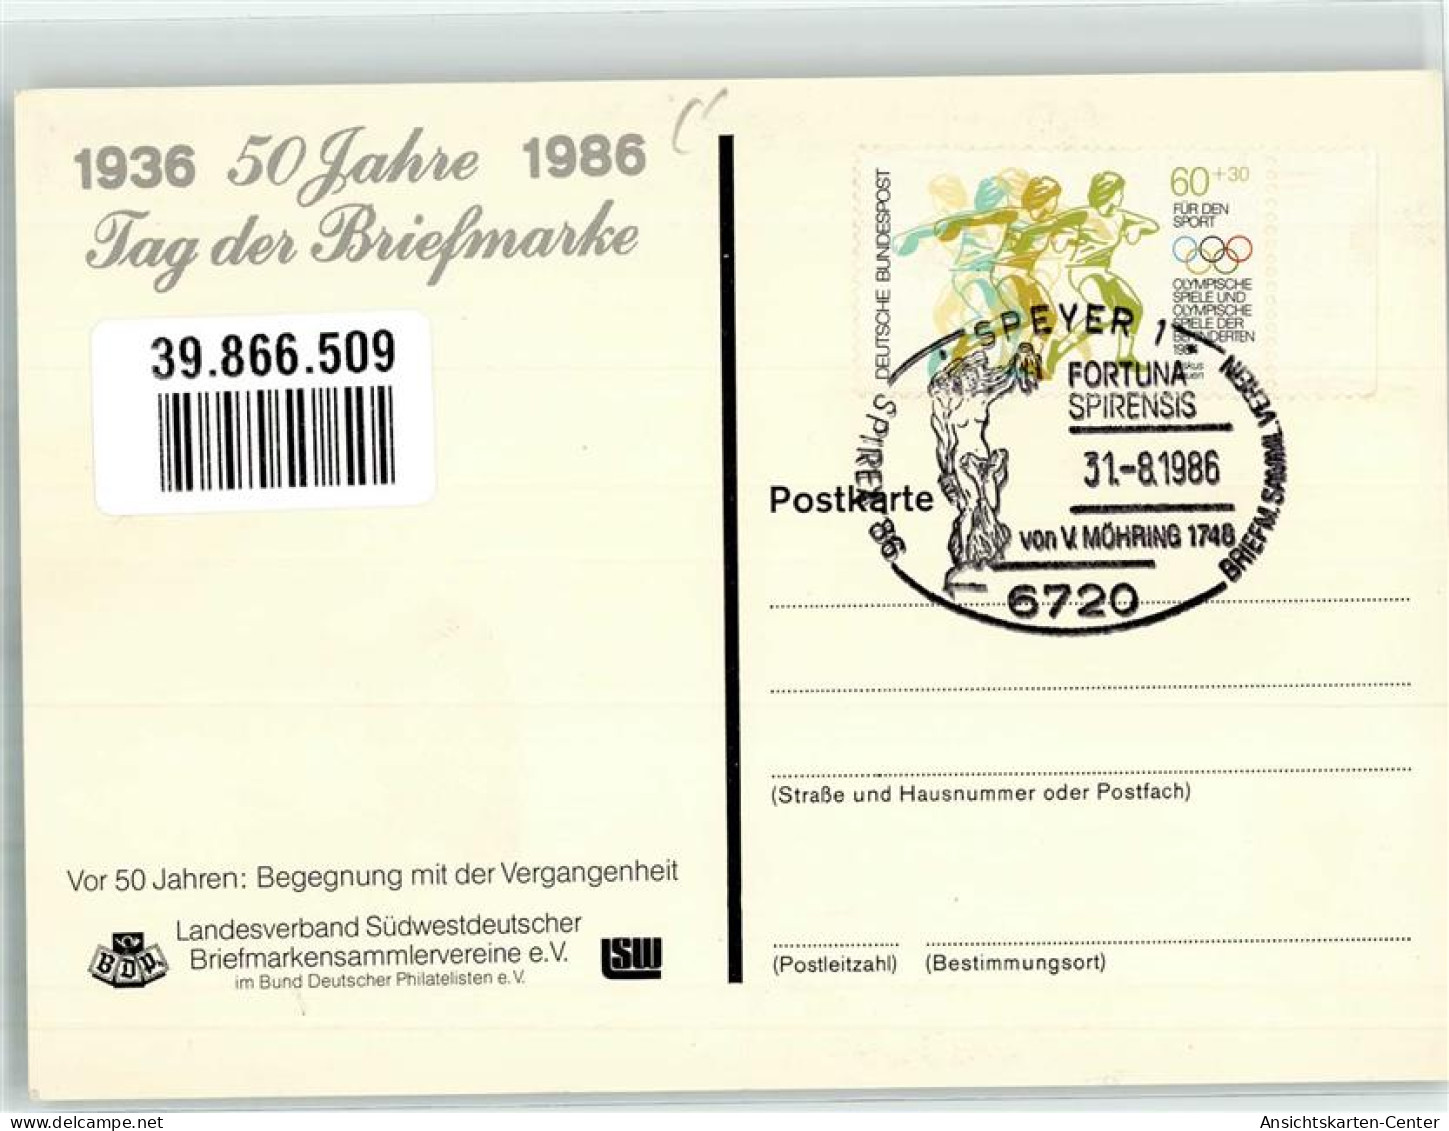 39866509 - Postkutsche Flugzeug Frau Sonderstempel 1986 - Briefmarken (Abbildungen)